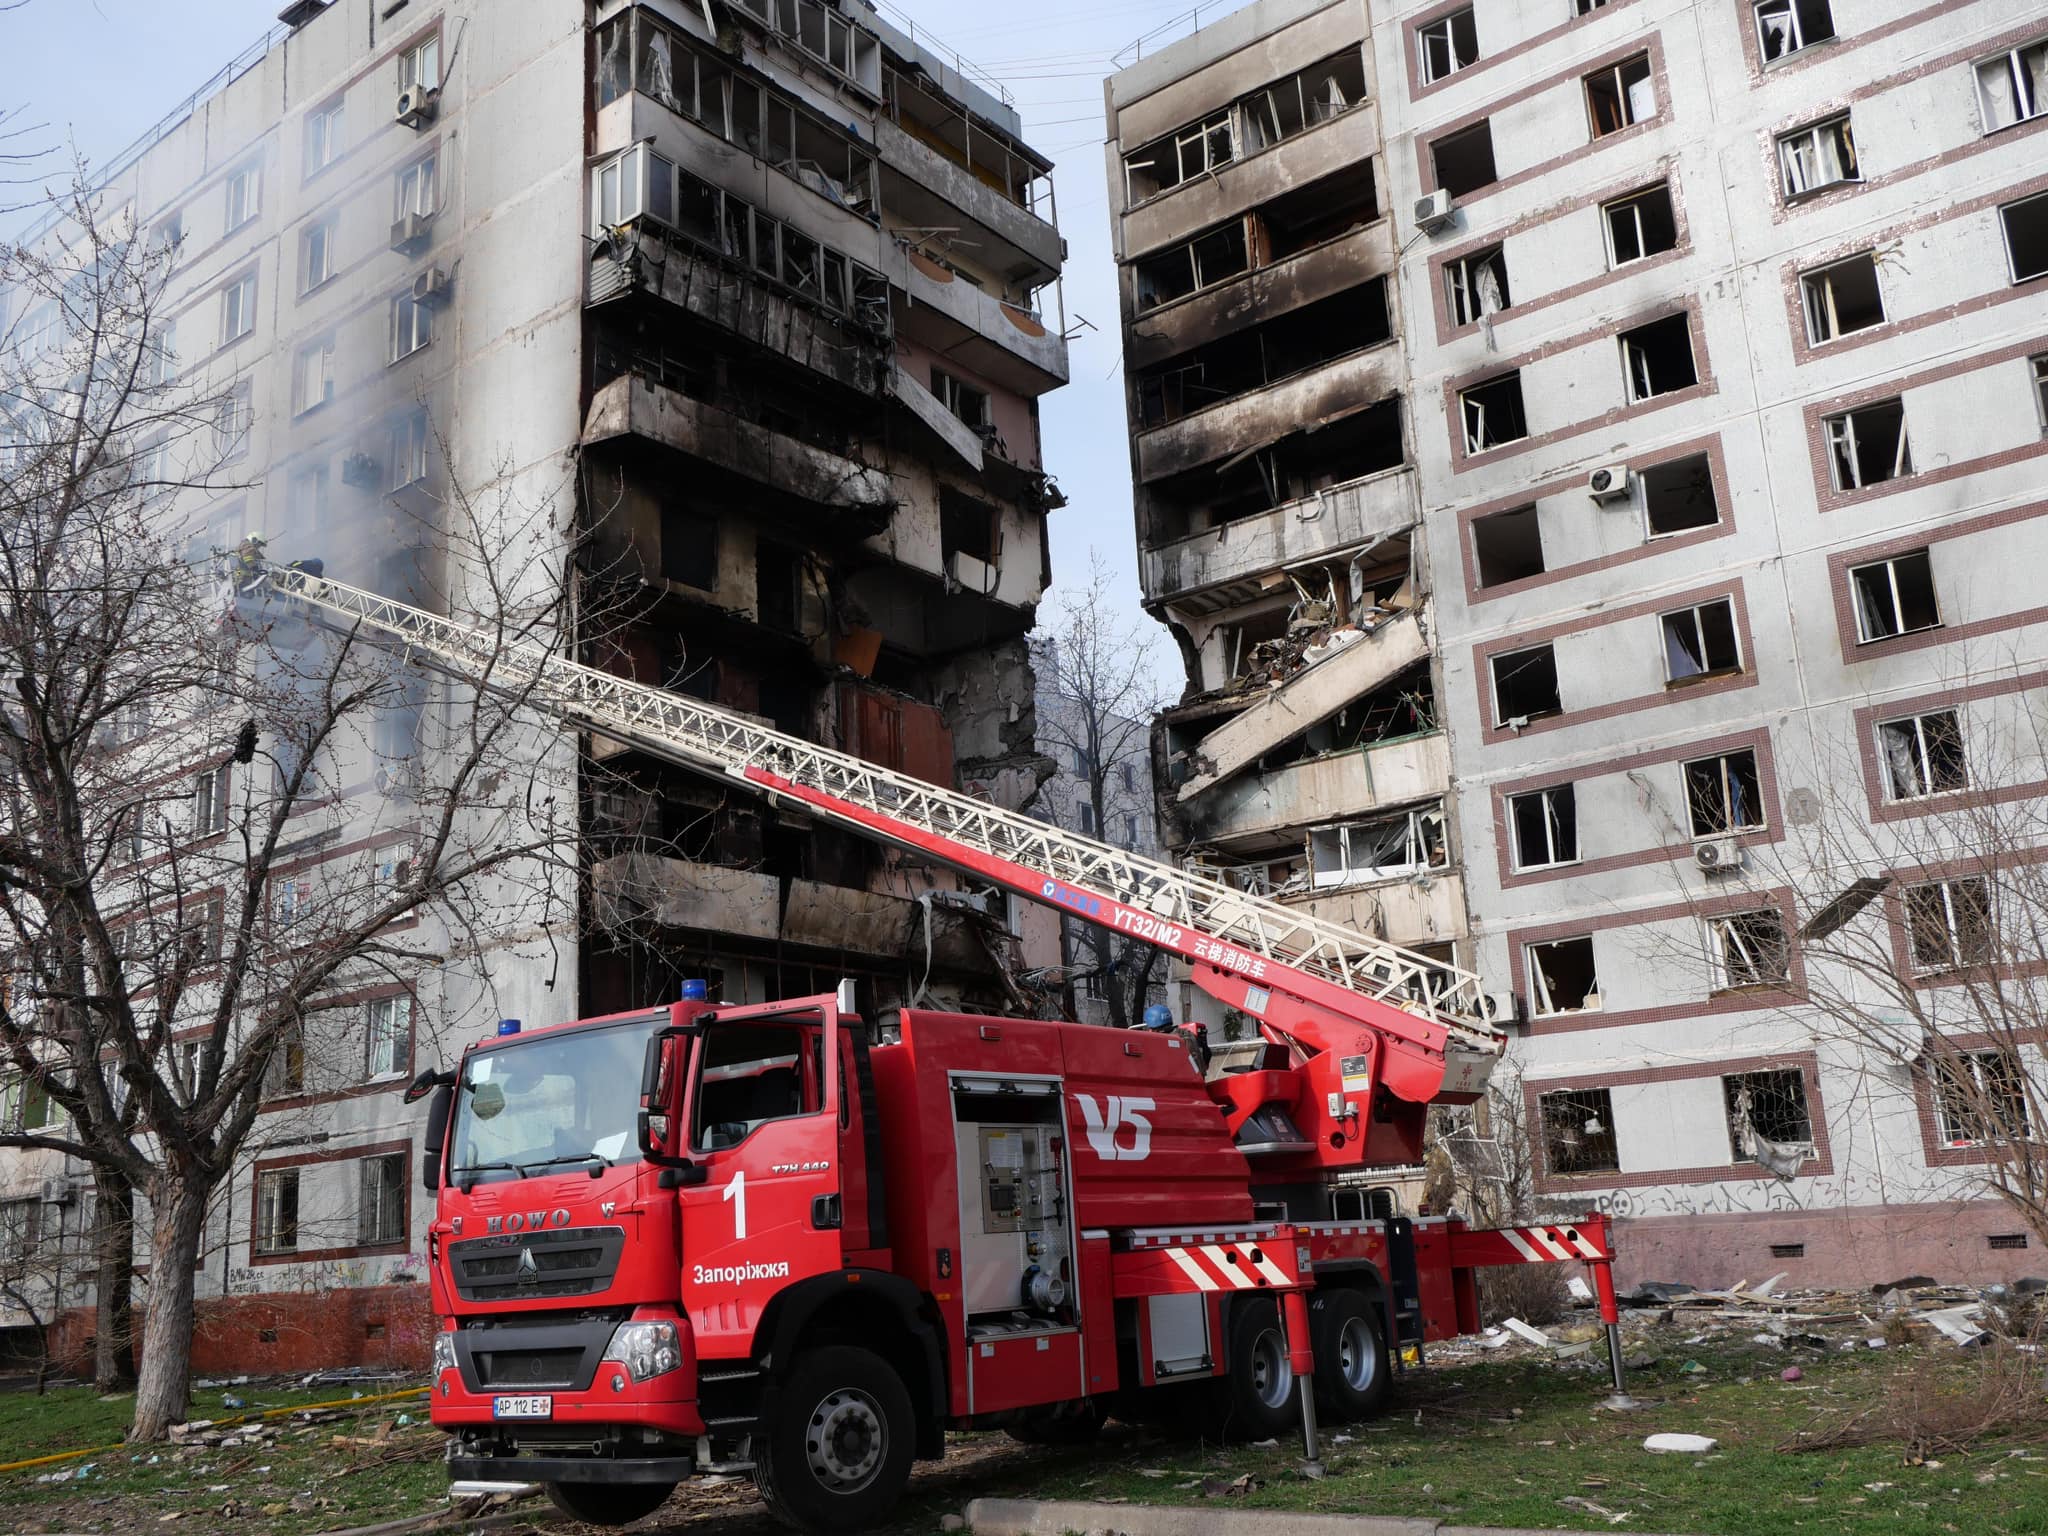 Рятувальна операція в Запоріжжі завершена: від російської атаки загалом 34 людини постраждали, з них троє дітей, одна людина померла (ФОТО) 5